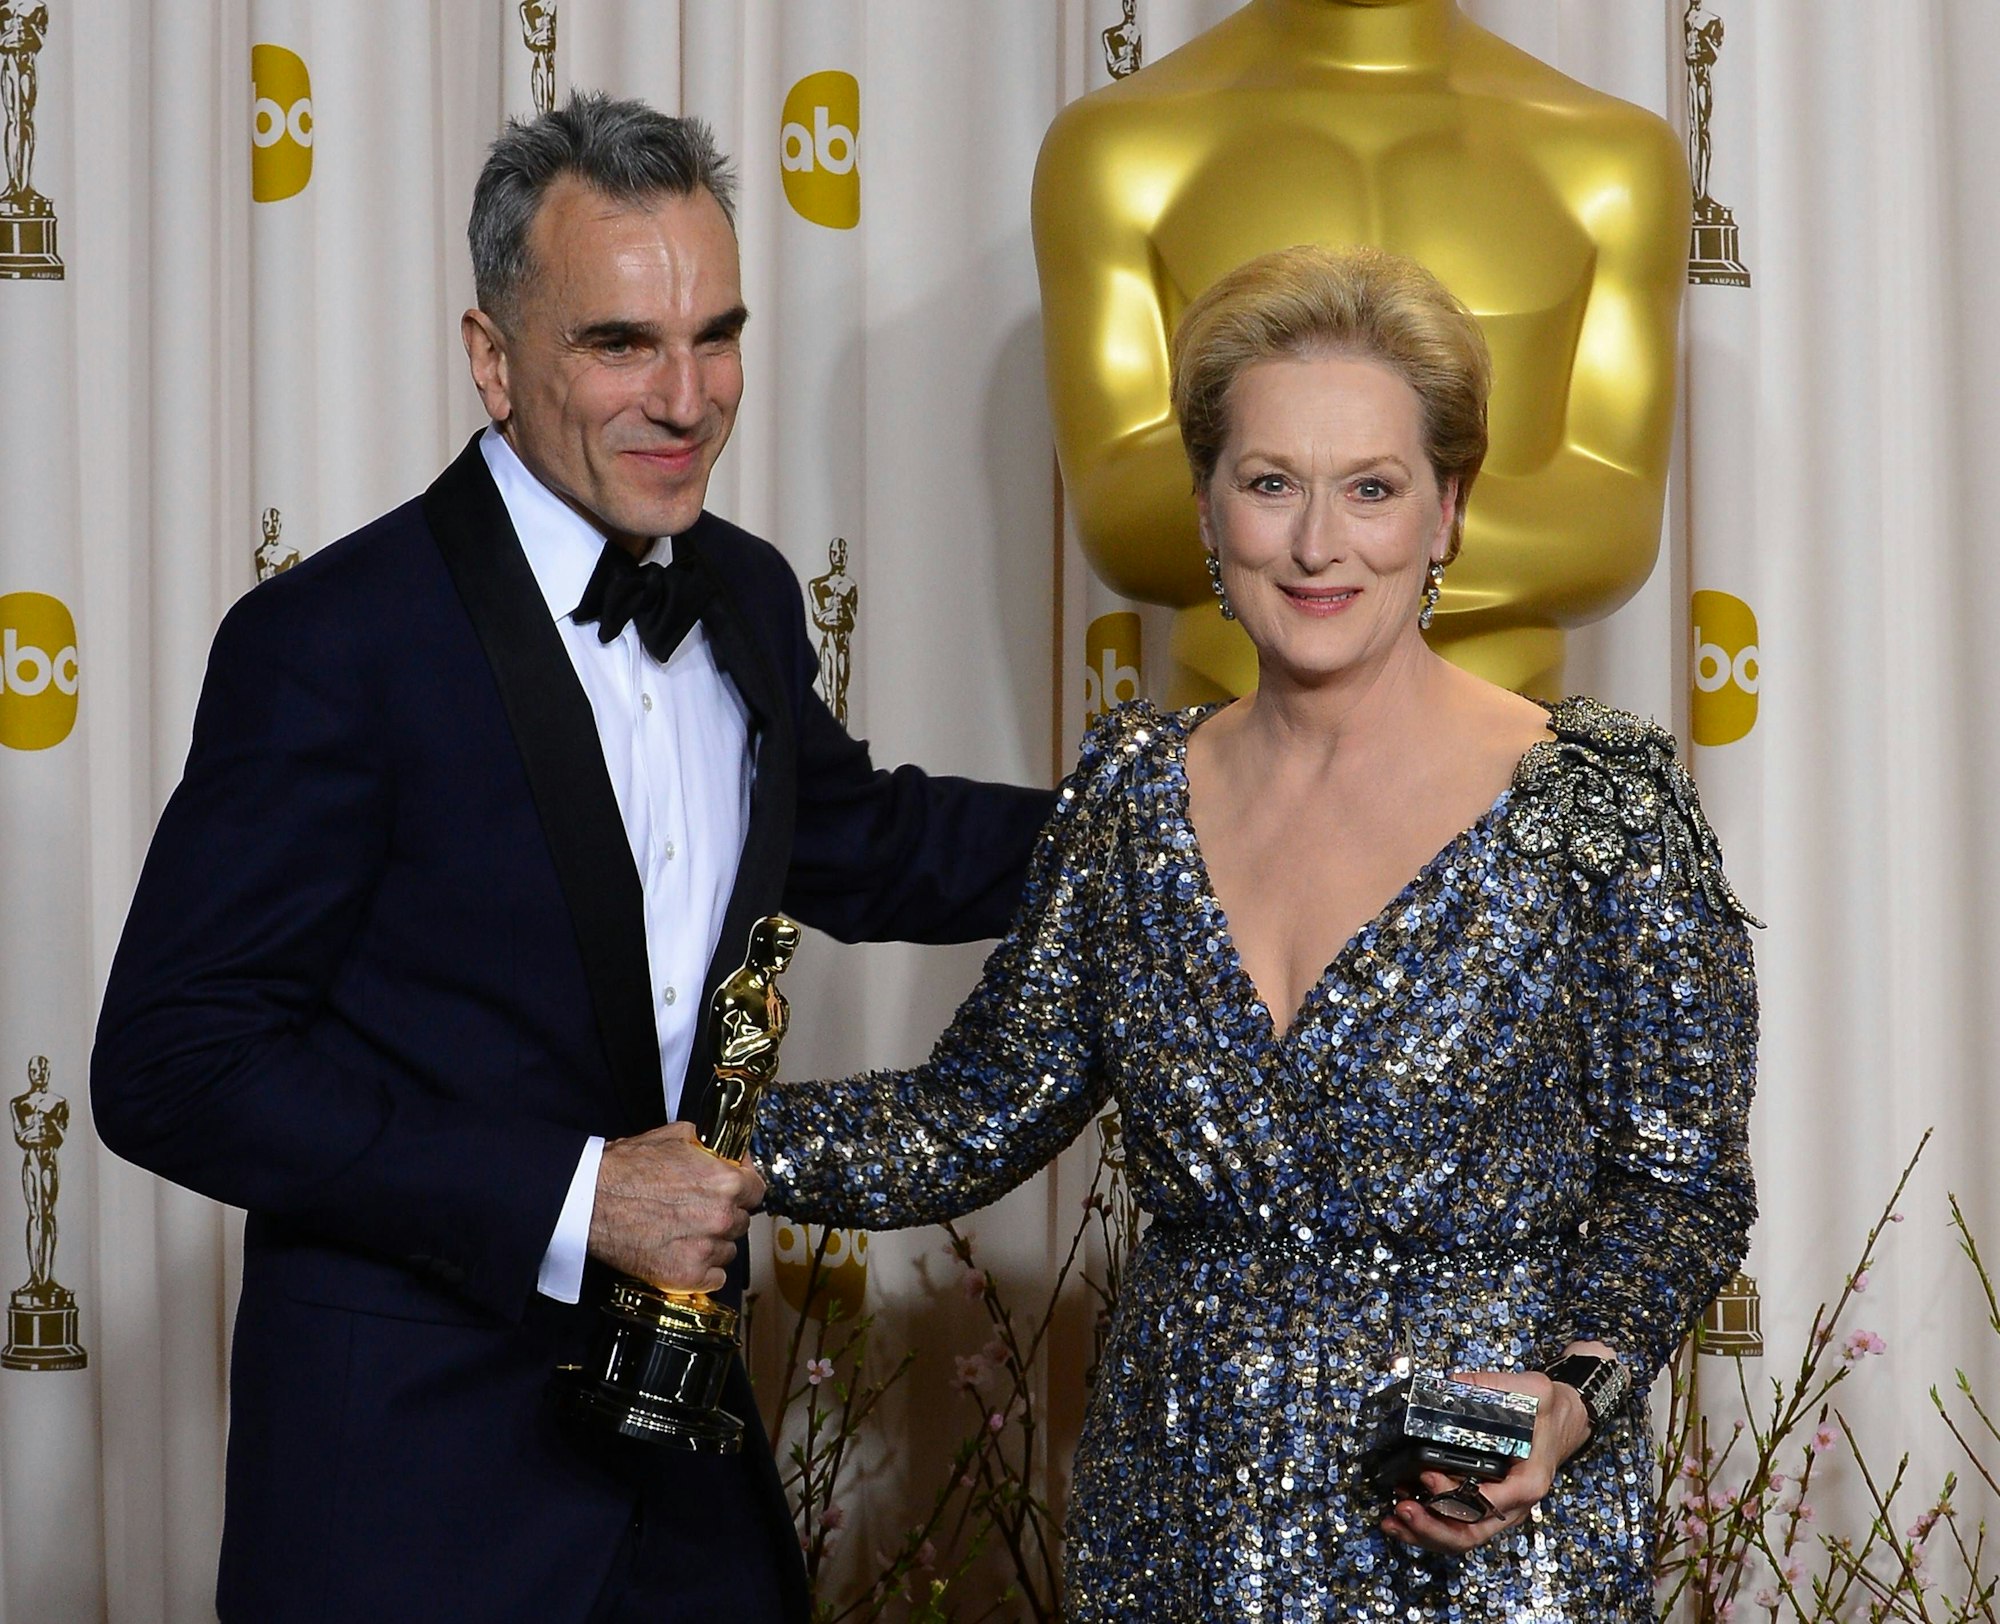 Daniel Day-Lewis und Meryl Streep bei der Oscar-Verleihung 2013